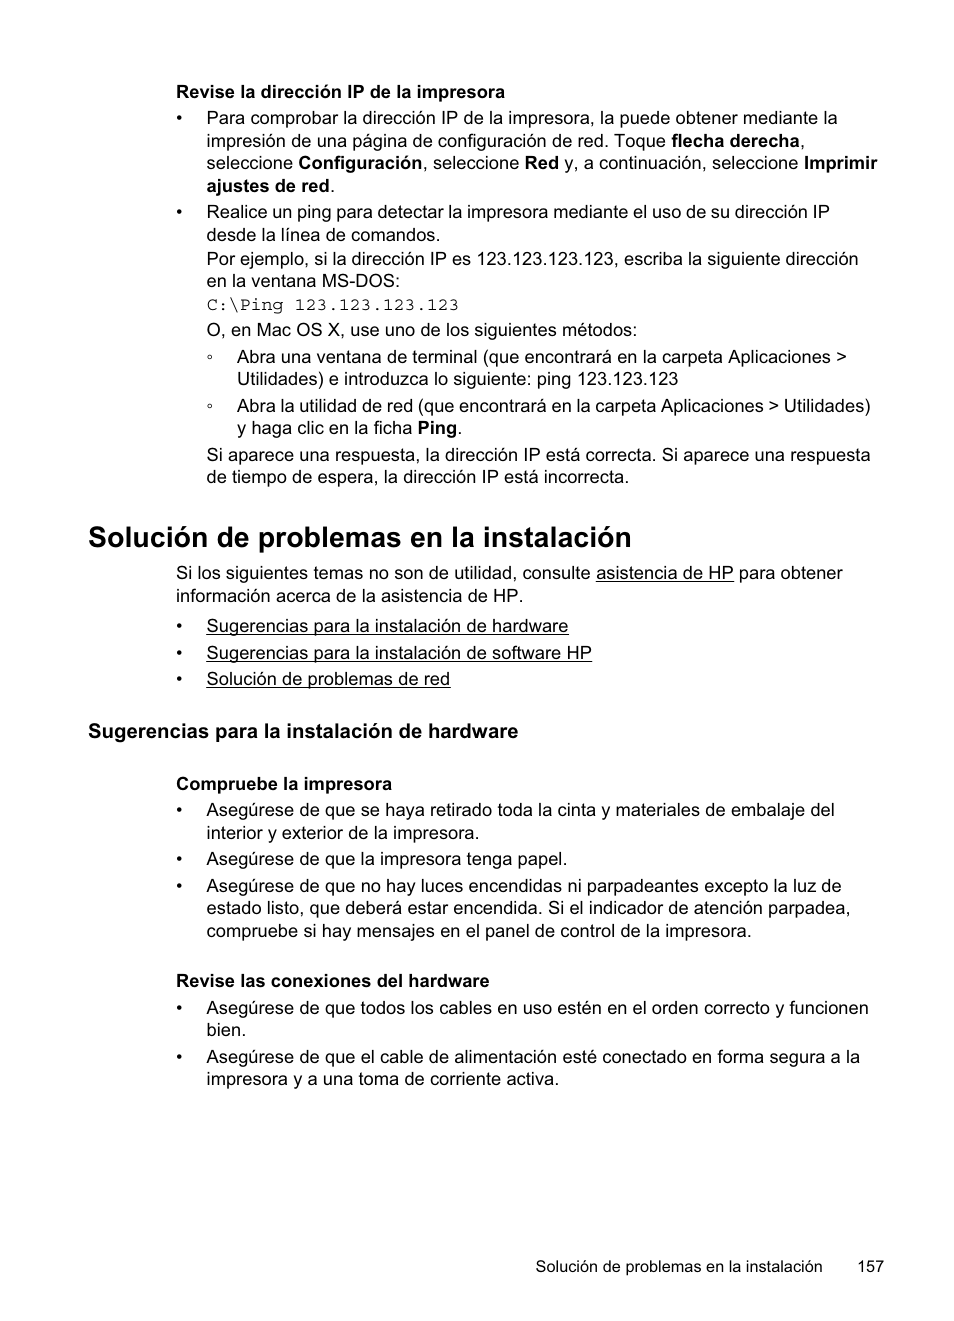 Solución de problemas en la instalación, Sugerencias para la instalación de hardware | HP Officejet Pro 8500A Manual del usuario | Página 161 / 264